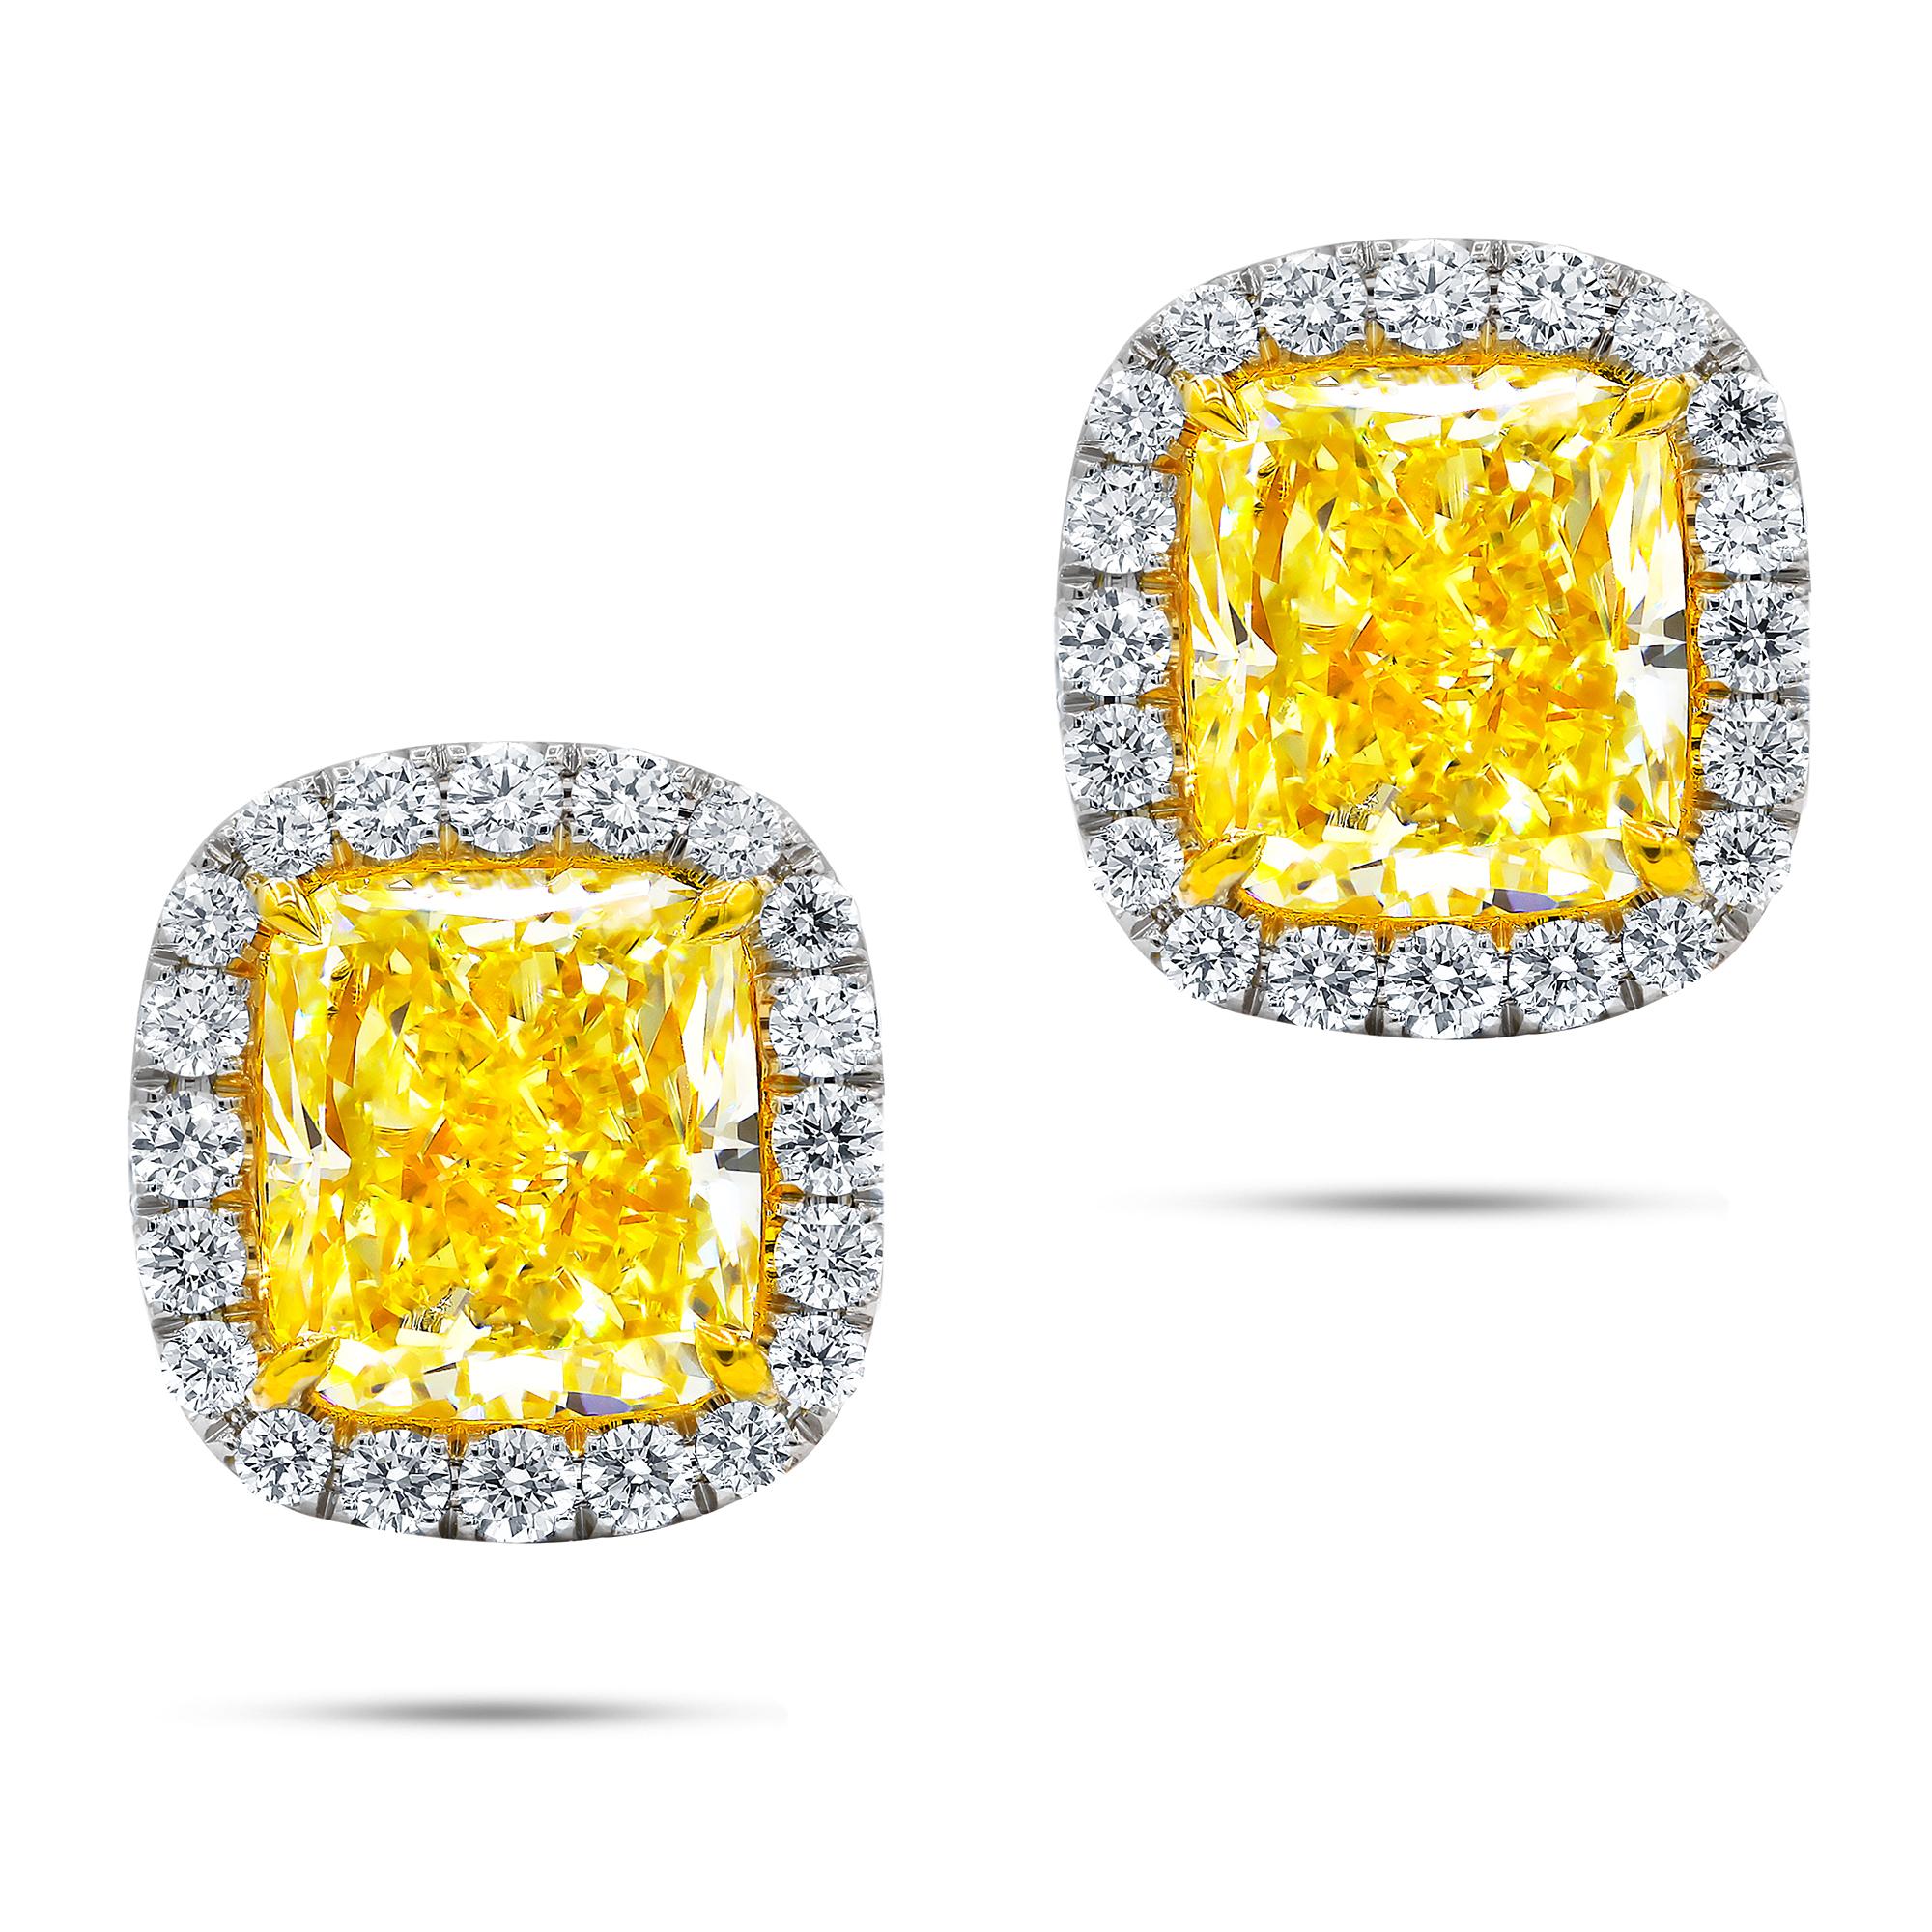 18 Karat zweifarbige Ohrstecker mit GIA zertifizierten Kissenschliffen 1,52cts Fcy/vs1  Und 1,51cts Fcy/vvs12 Set mit 0,40 Cts weißen Diamanten auf der Seite.
